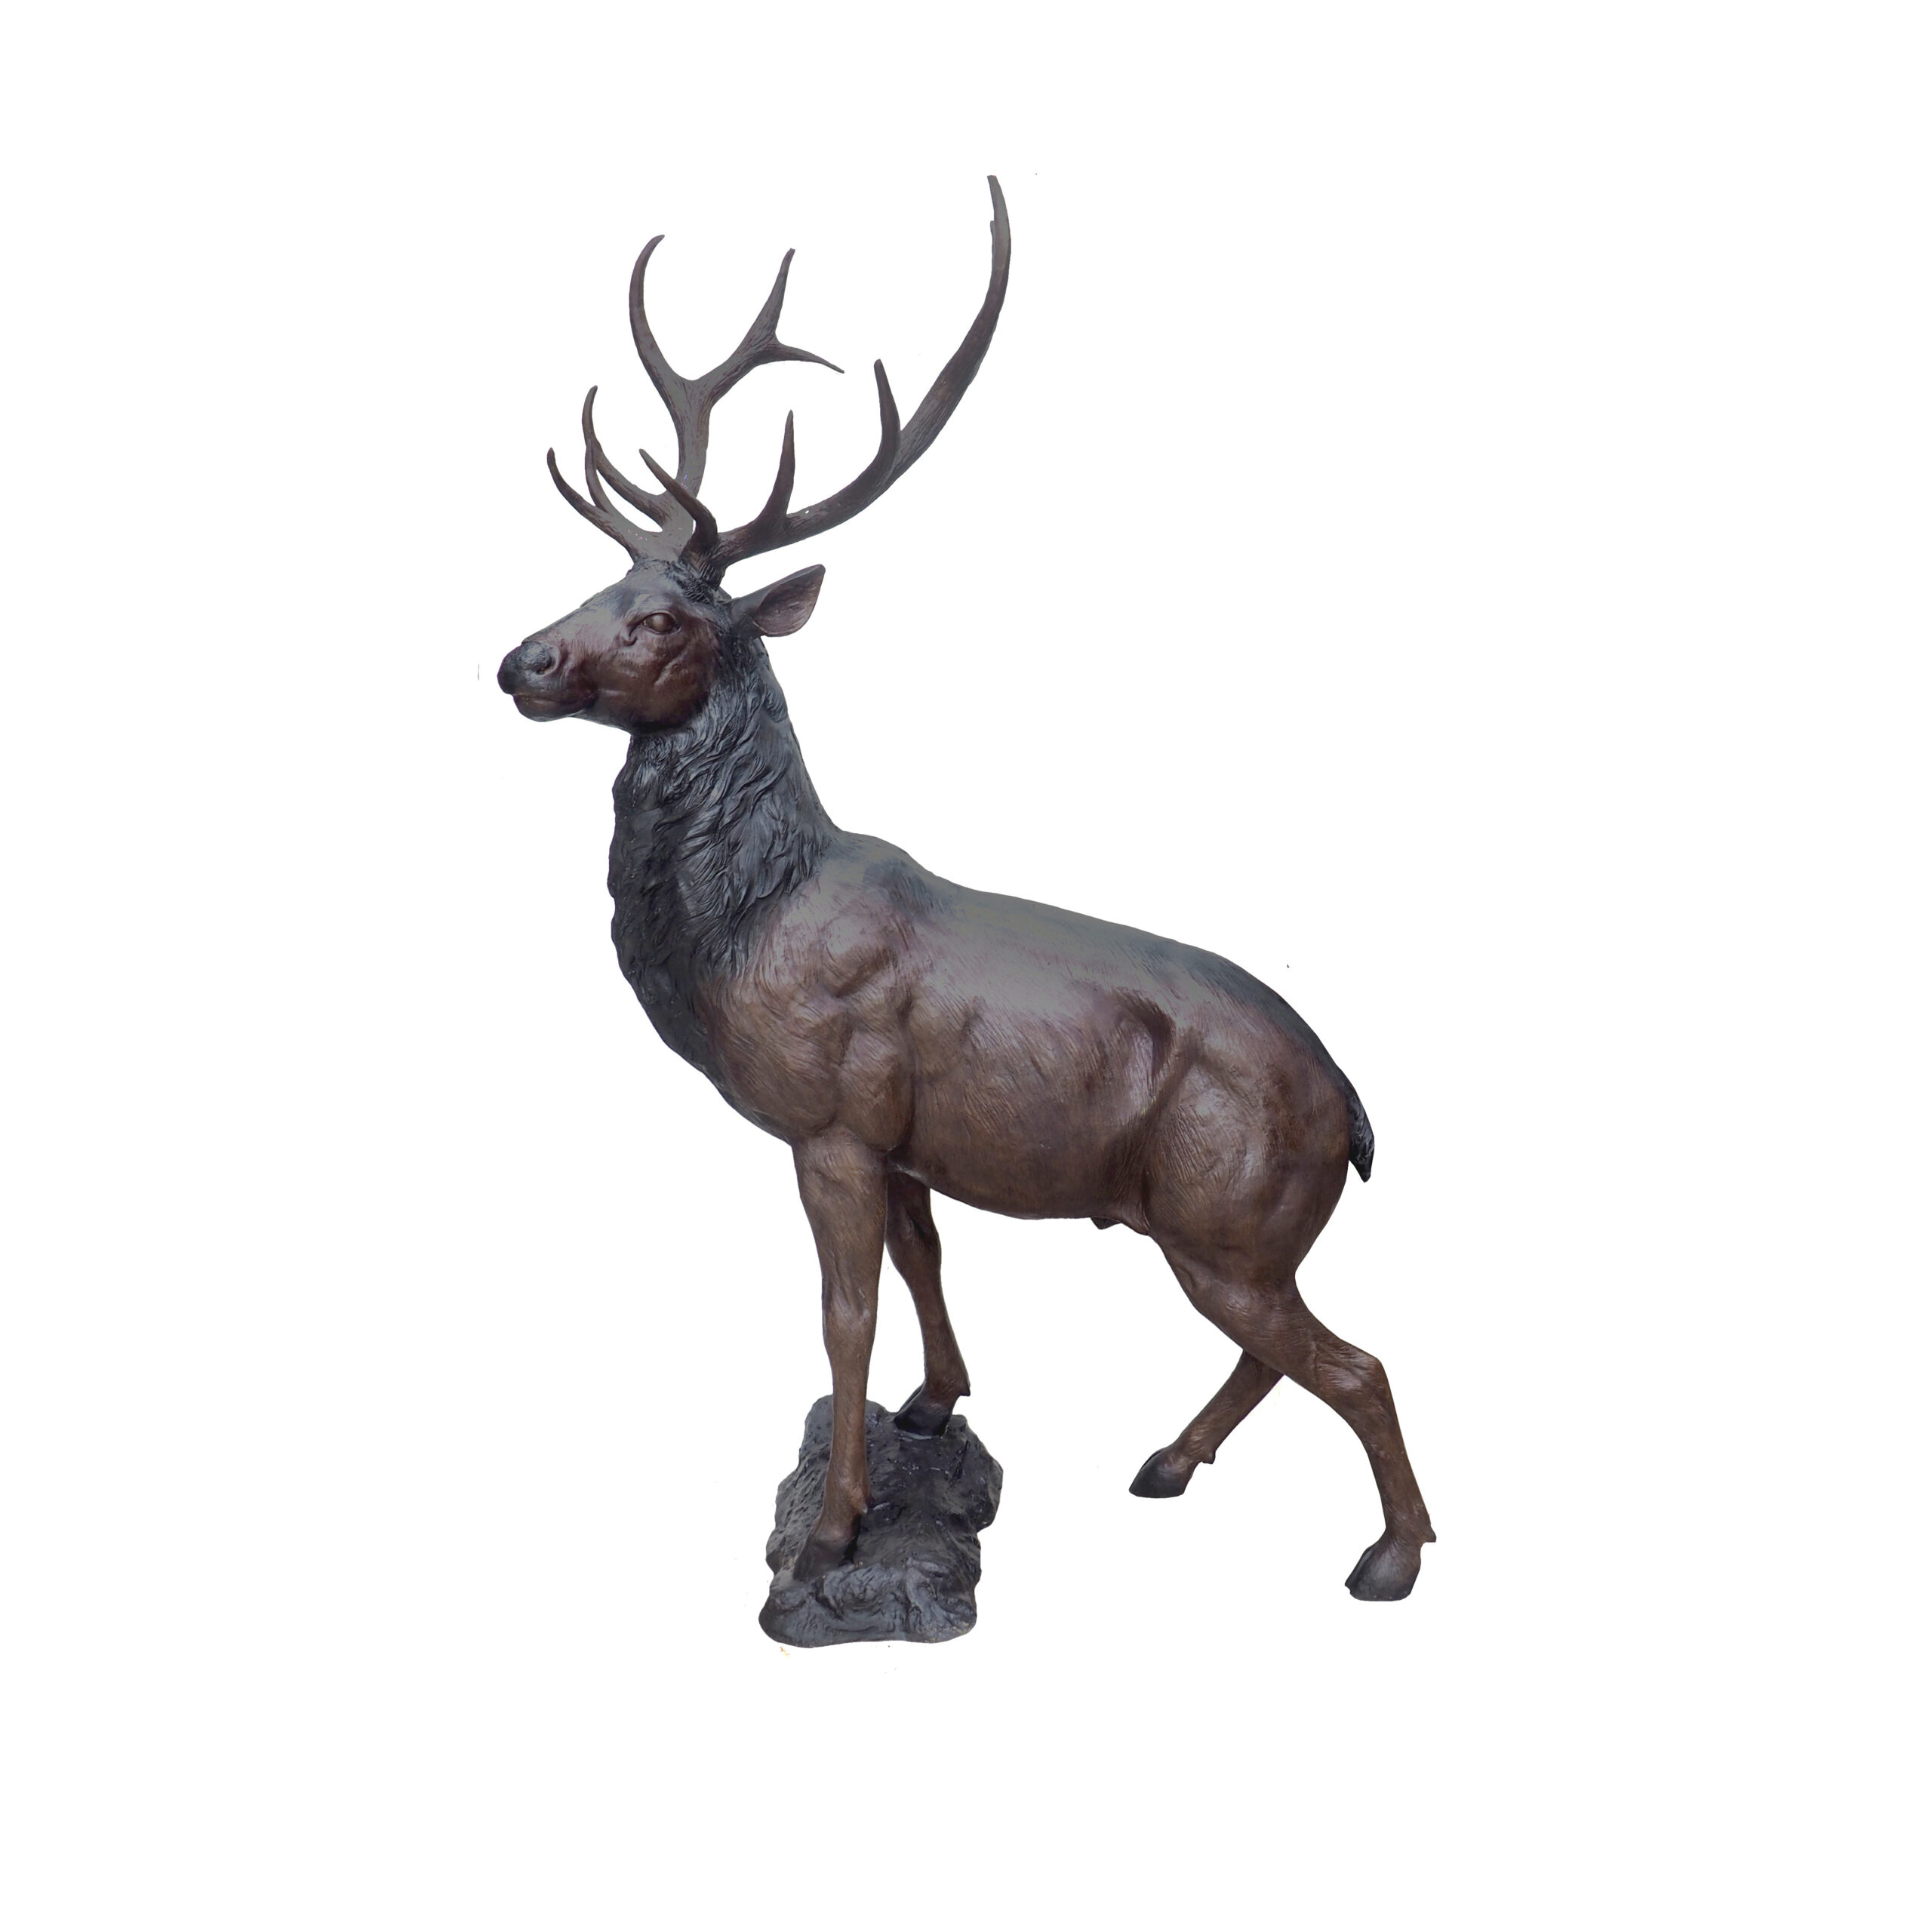 SRB707193-A Bronze Standing Deer Sculpture by Metropolitan Galleries Inc